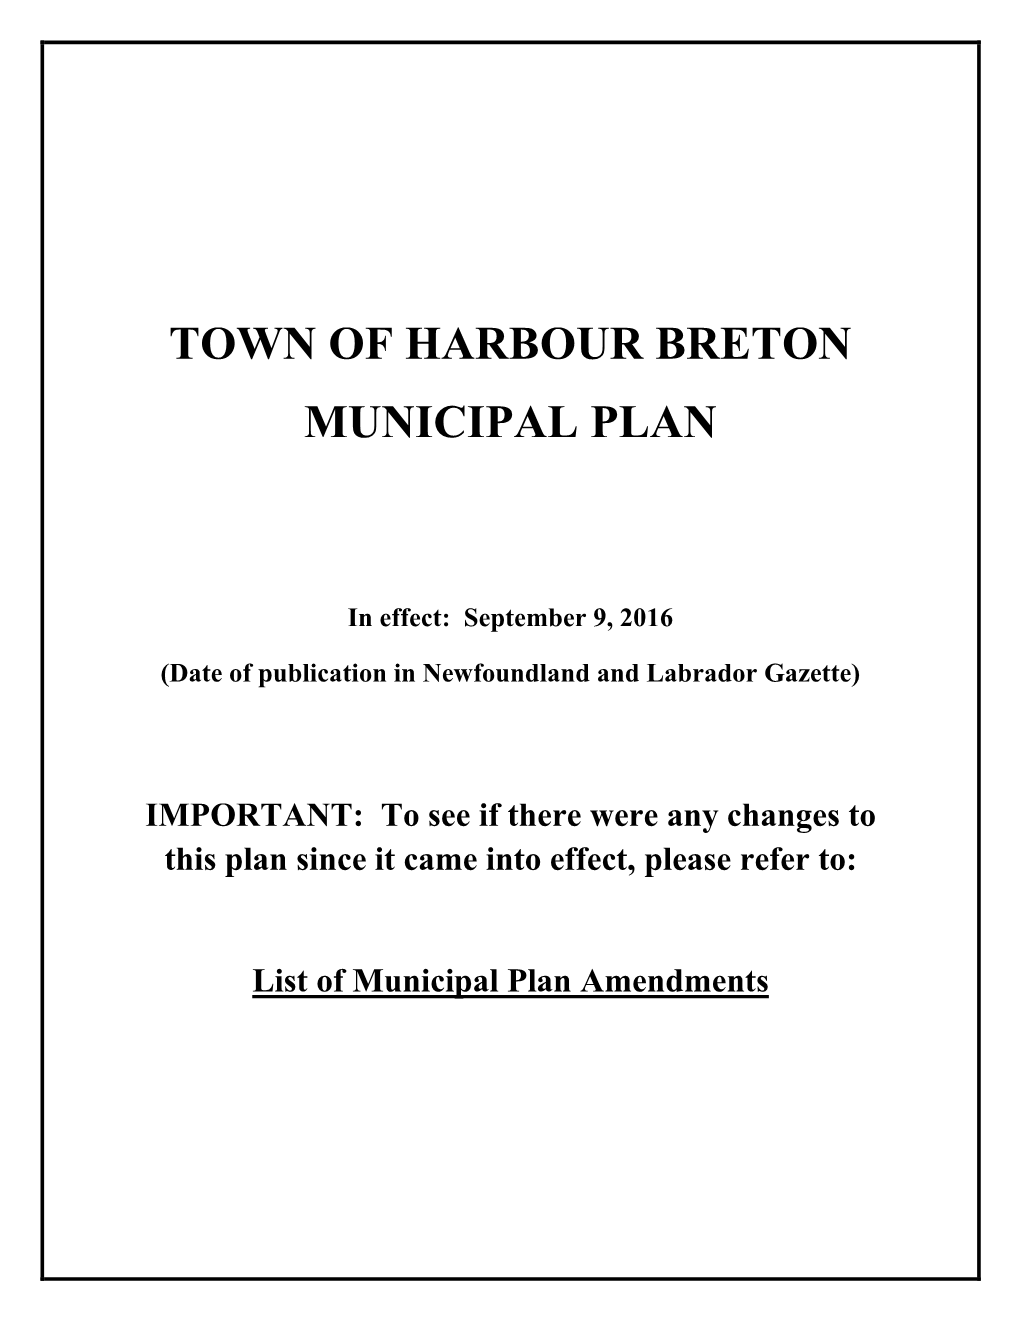 Town of Harbour Breton Municipal Plan